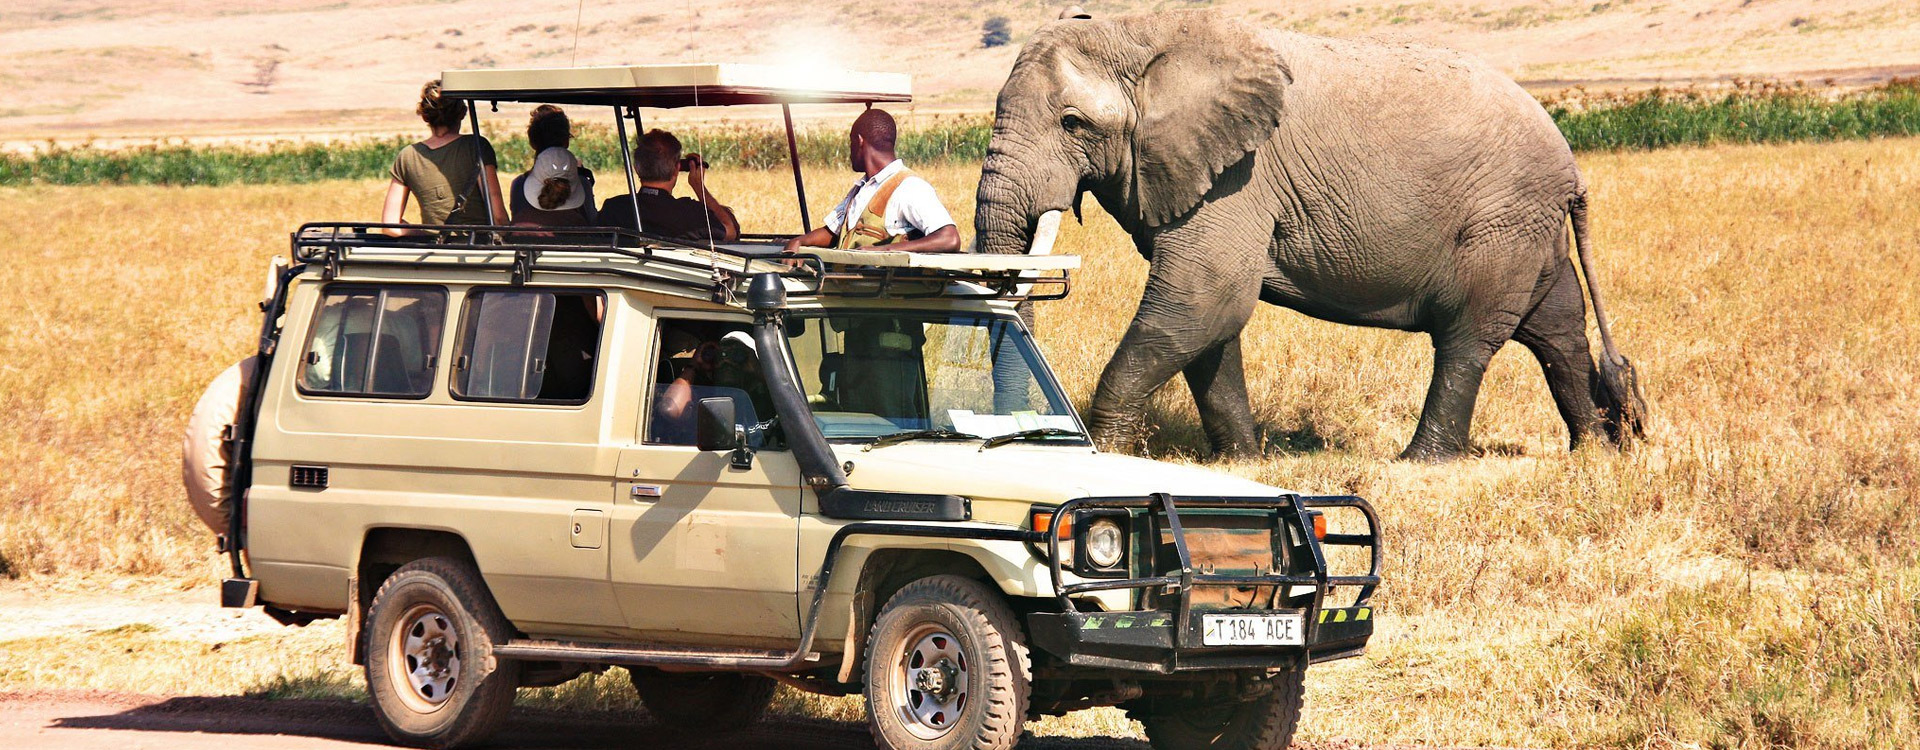 7 Days Tanzania Heritage Wildlife Safaris